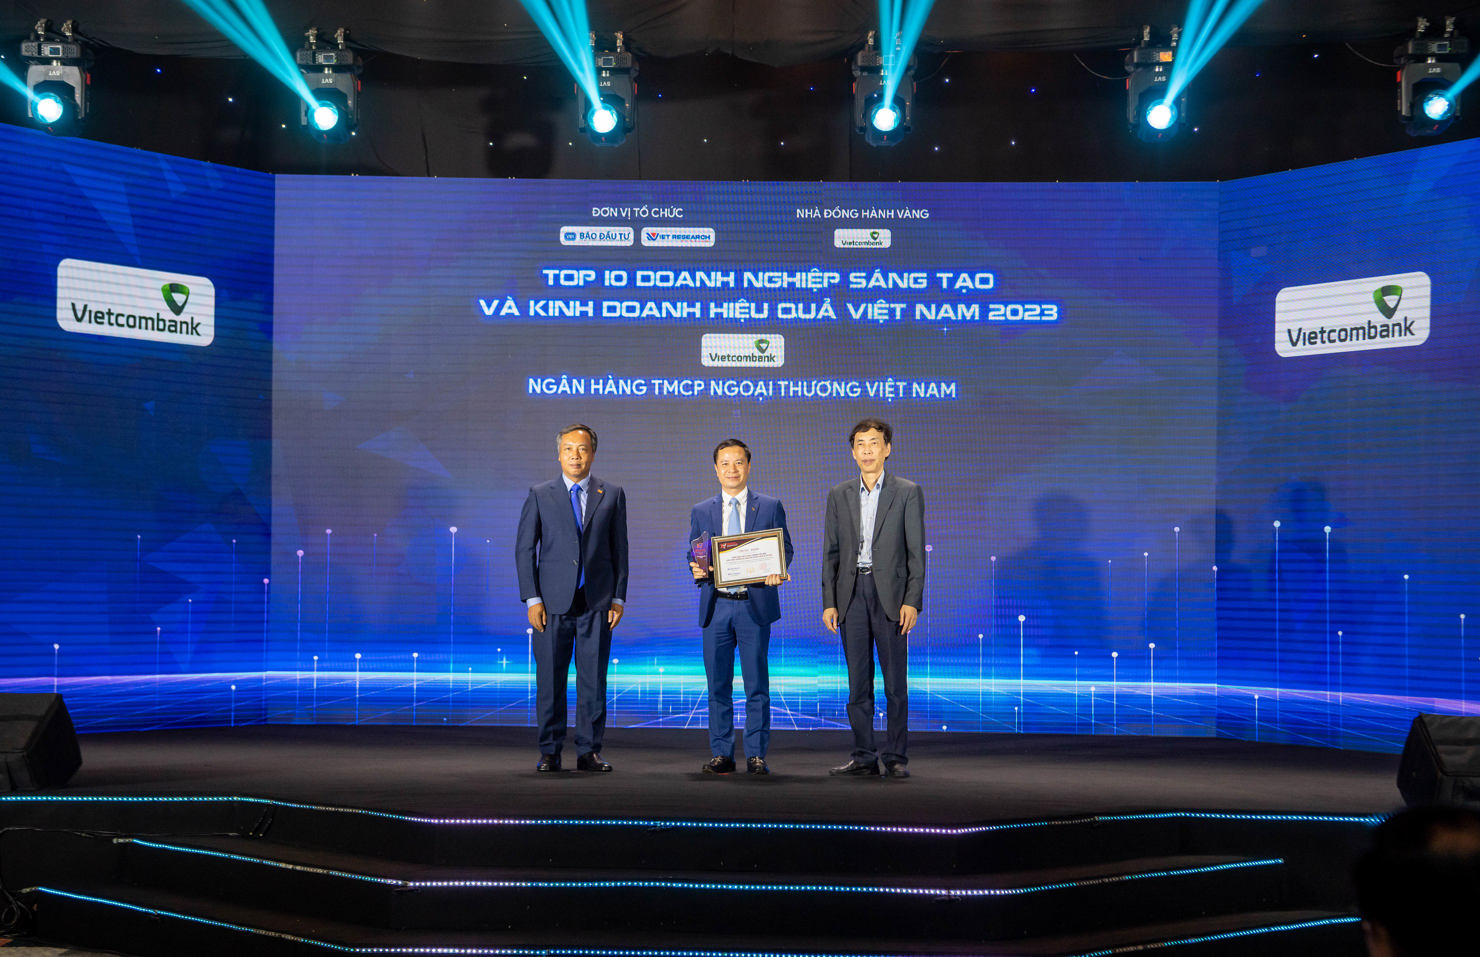 Ông Lê Hoàng Tùng - Kế toán trưởng (đứng giữa) thay mặt Lãnh đạo Vietcombank nhận chứng nhận vinh danh Vietcombank dẫn đầu Top 10 ngân hàng sáng tạo và kinh doanh hiệu quả năm 2023.